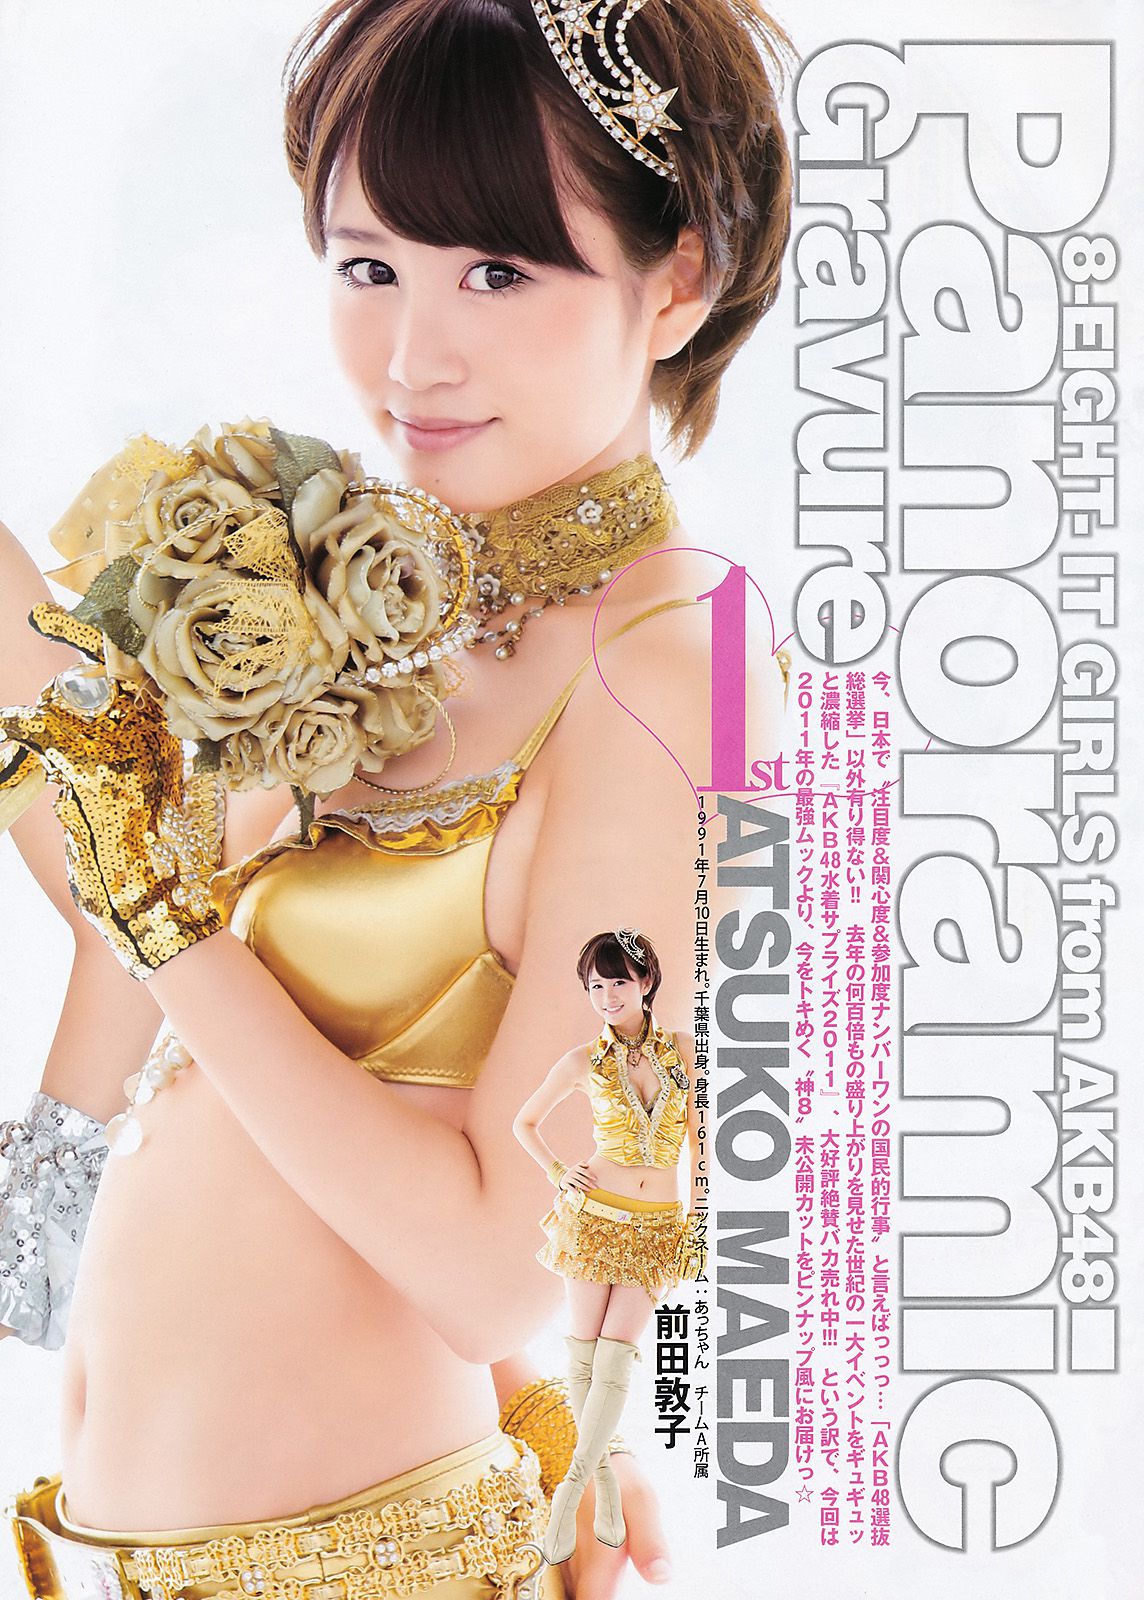 柏木由纪 AKB48 [Weekly Young Jump] 2011年No.38 写真杂志